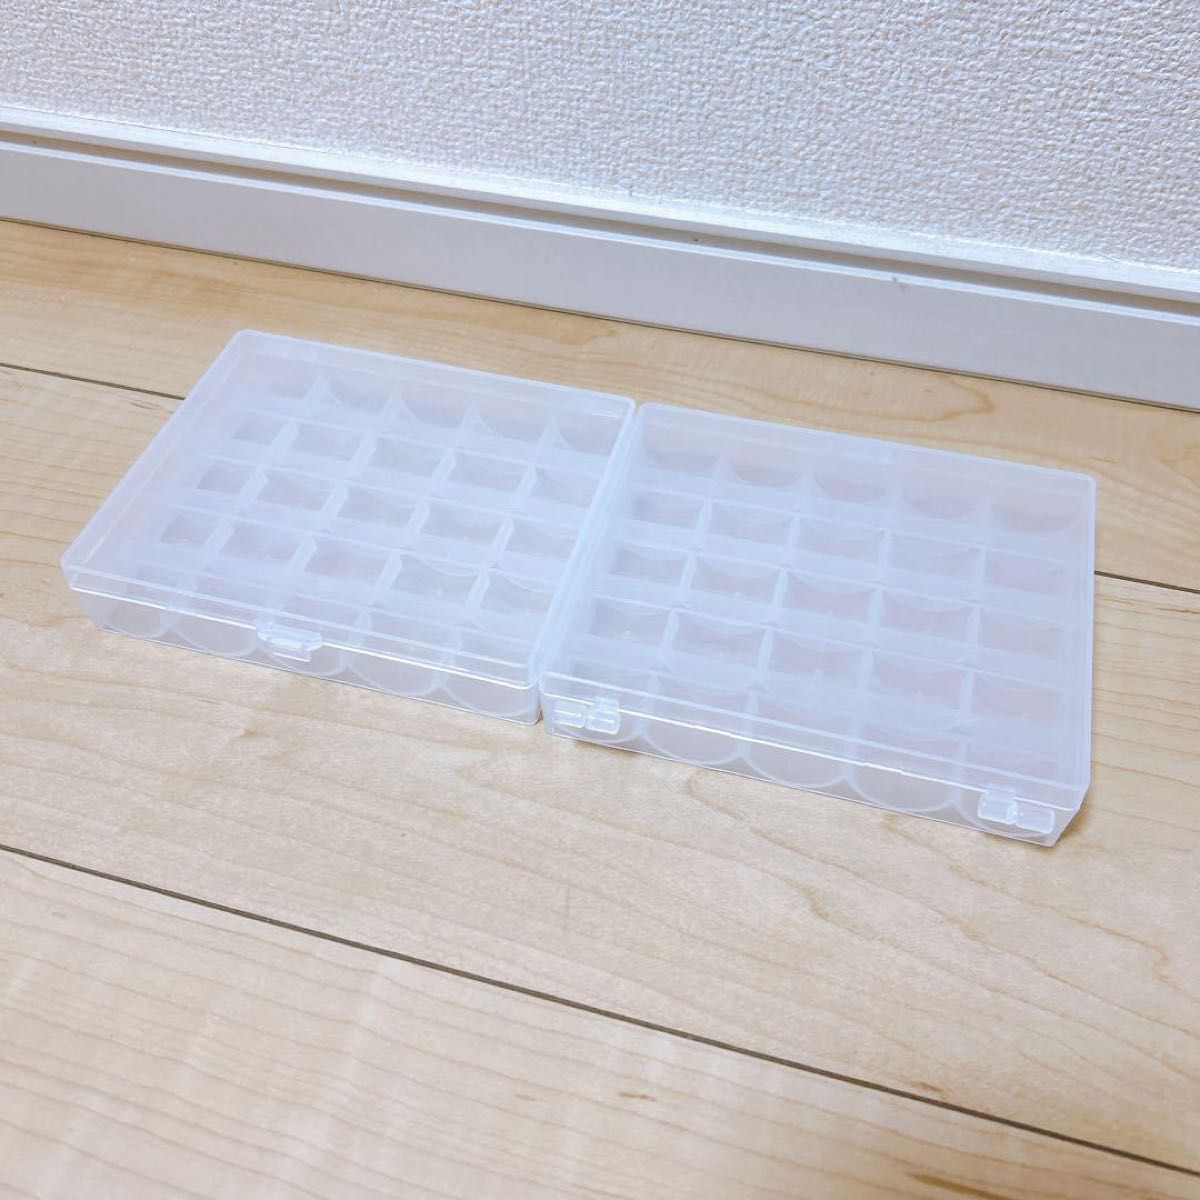 ボビン収納ボックス 透明なプラスチック製